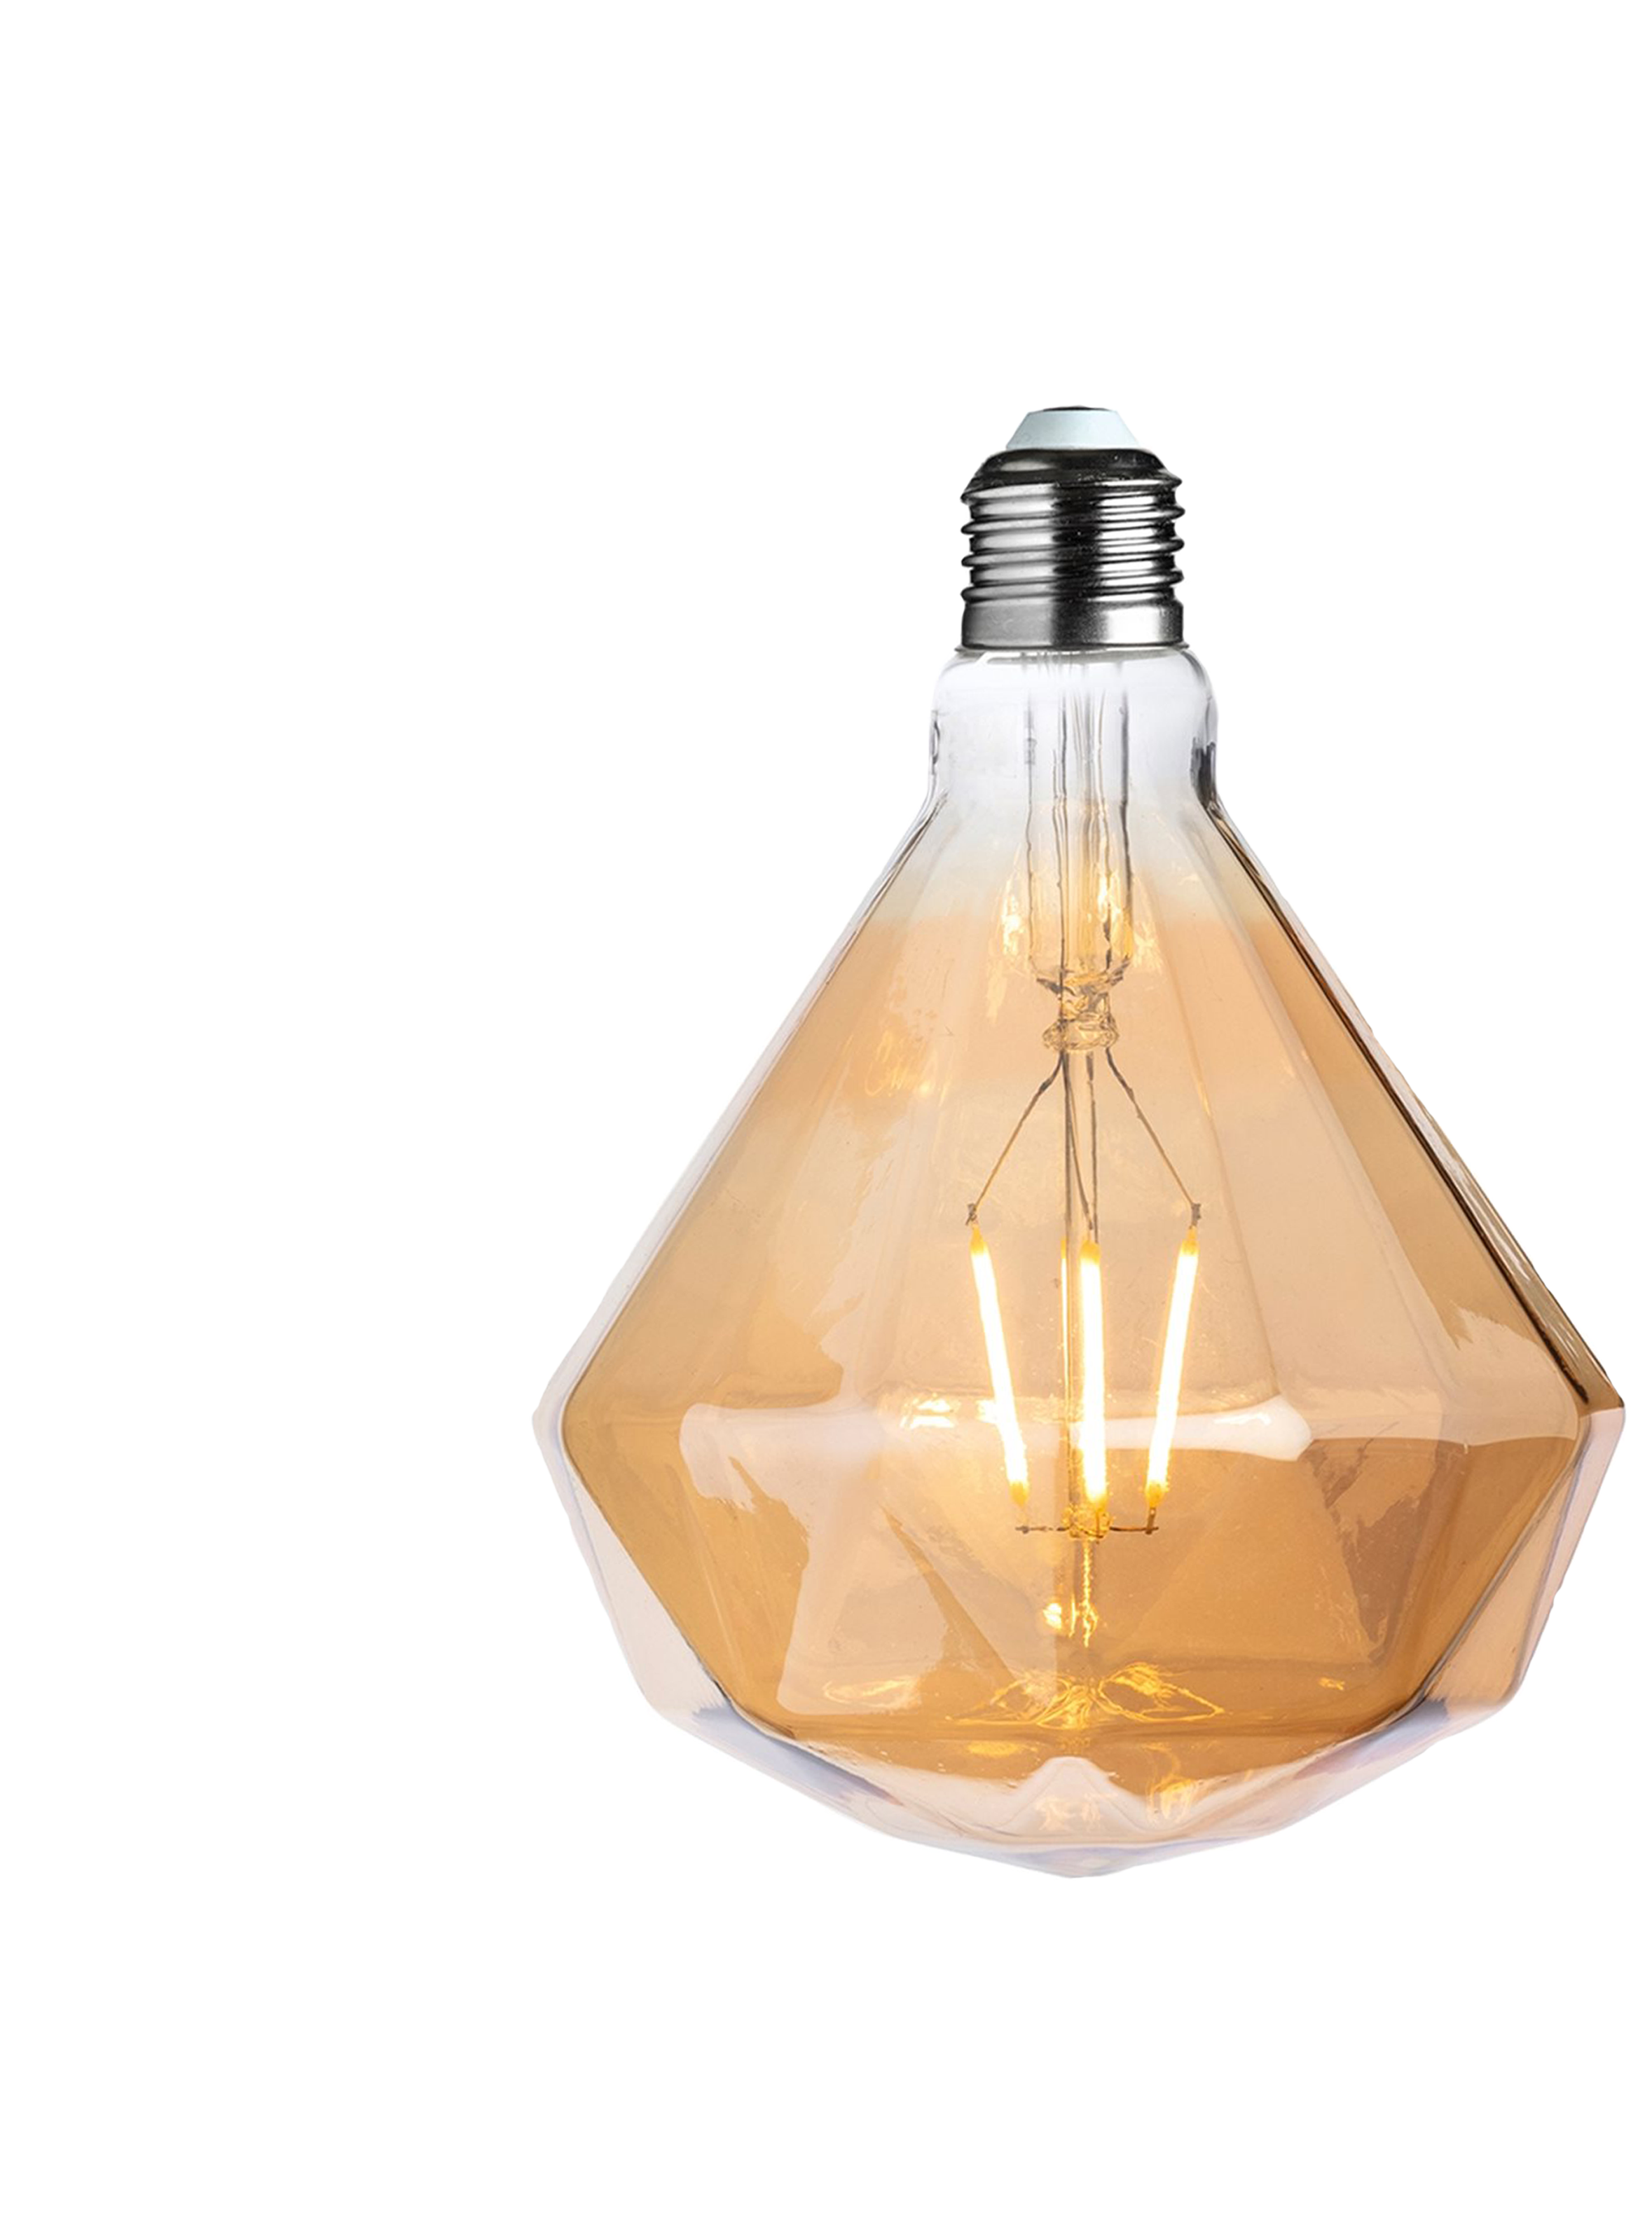 Diamond-shaped LED bulb emitting warm white light